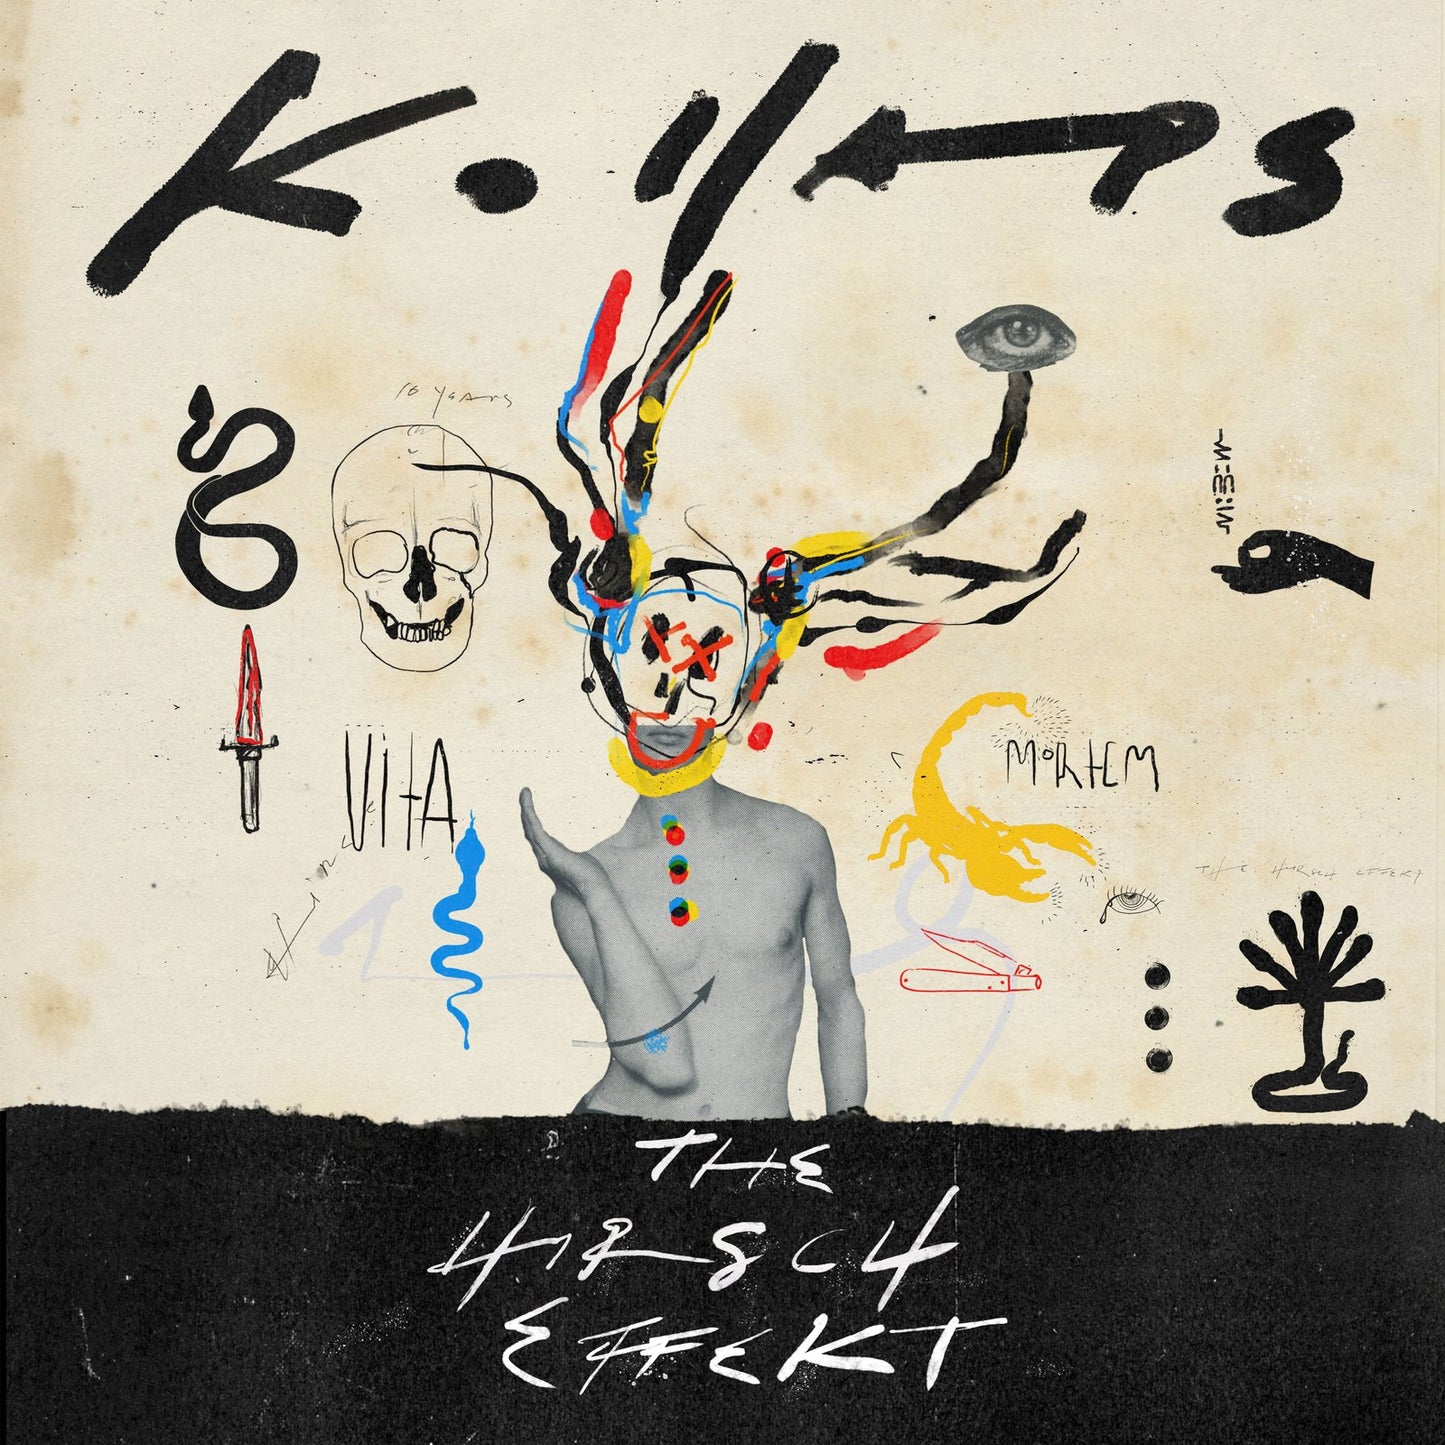 The Hirsch Effekt "Kollaps" LP